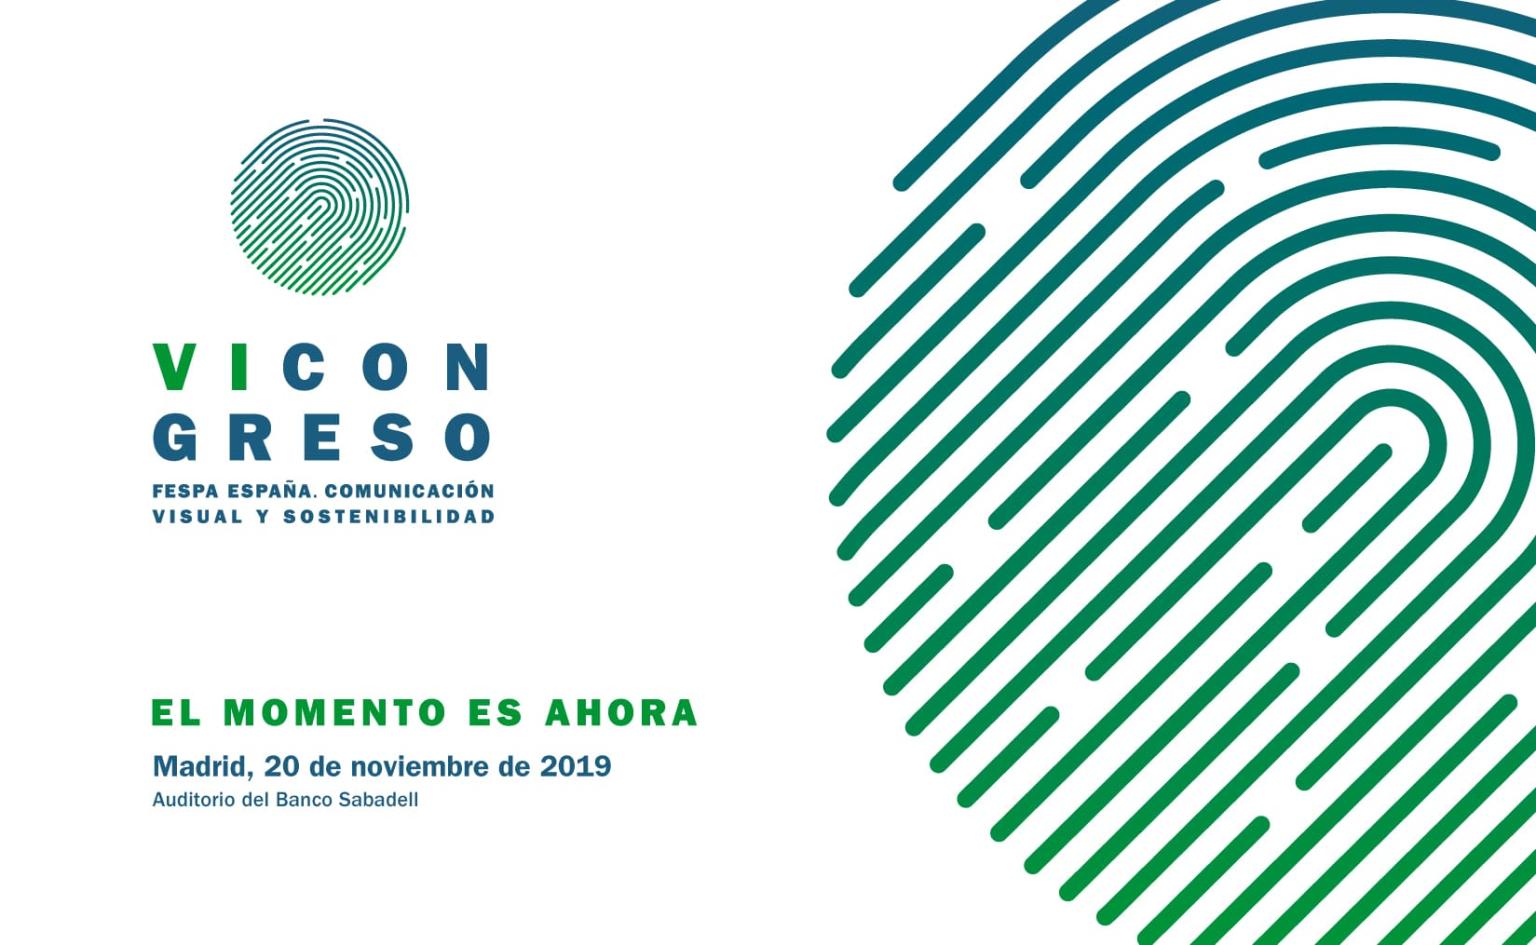 Jesvy participa en el VI Congreso de FESPA España «Comunicación visual y sostenibilidad»